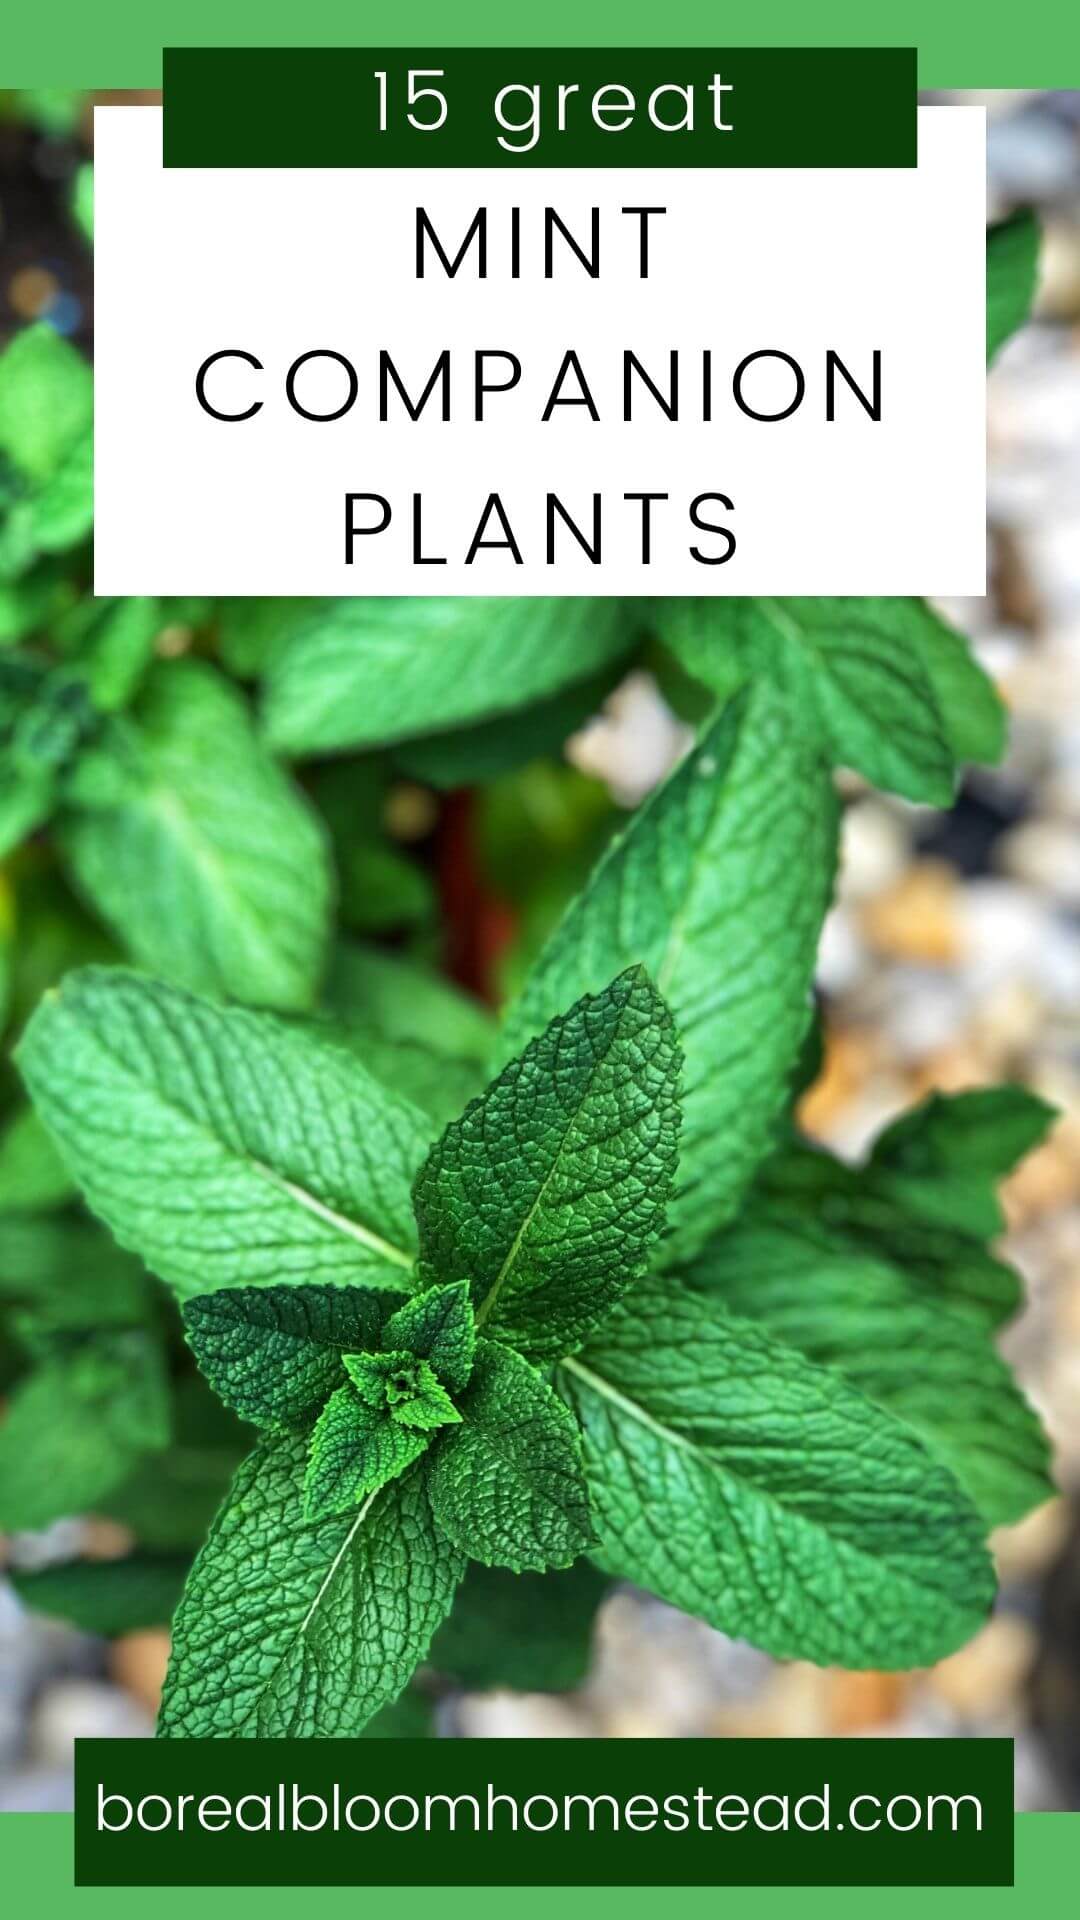 15 great mint companion plants pinterest graphic. 